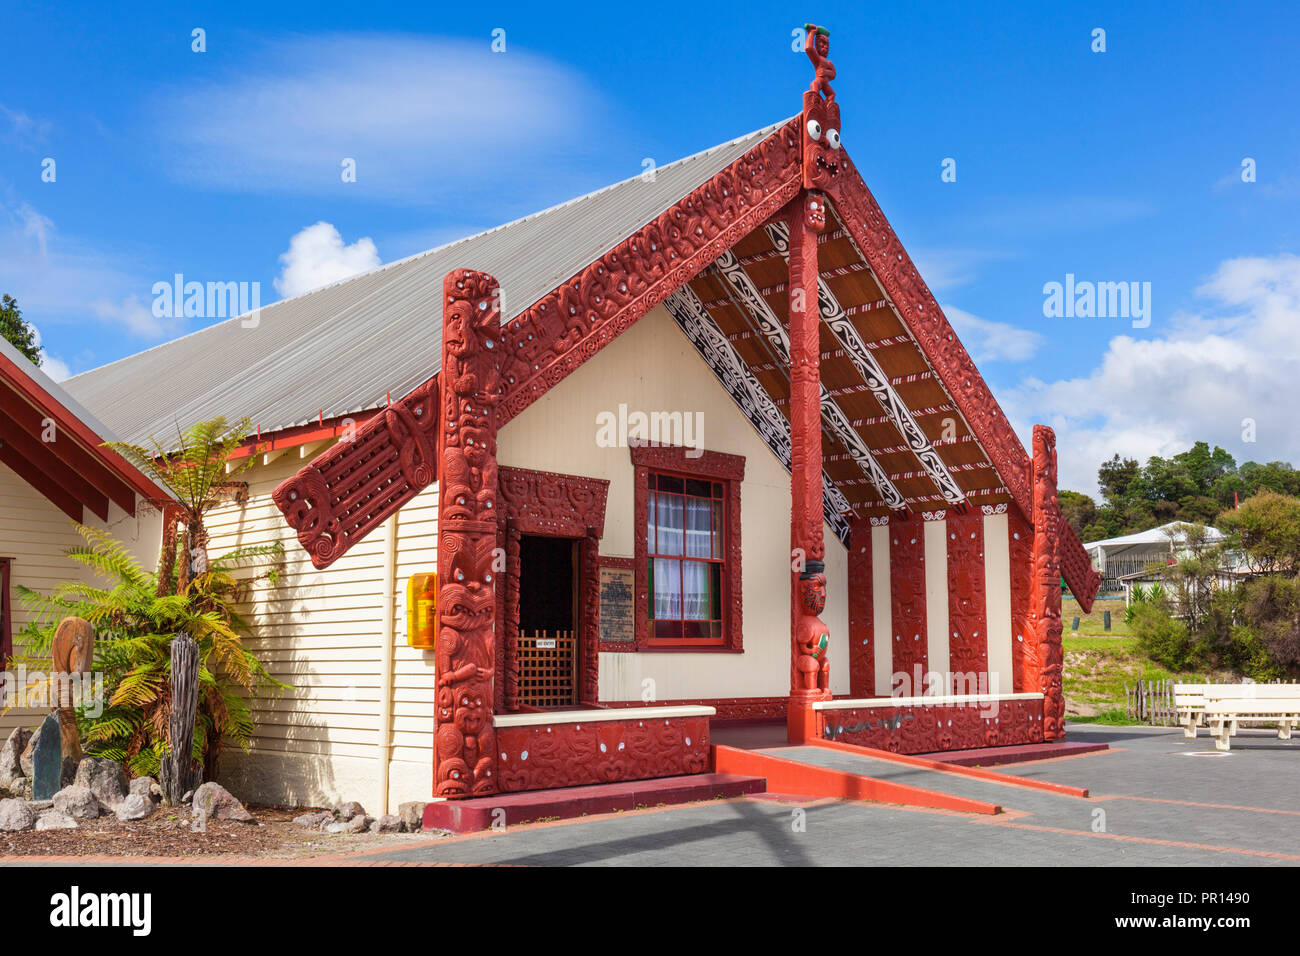 Maison Wahaio réunion traditionnel Maori, Whare Tipuna, village thermal de Whakarewarewa, Rotorua, île du Nord, Nouvelle-Zélande, Pacifique Banque D'Images